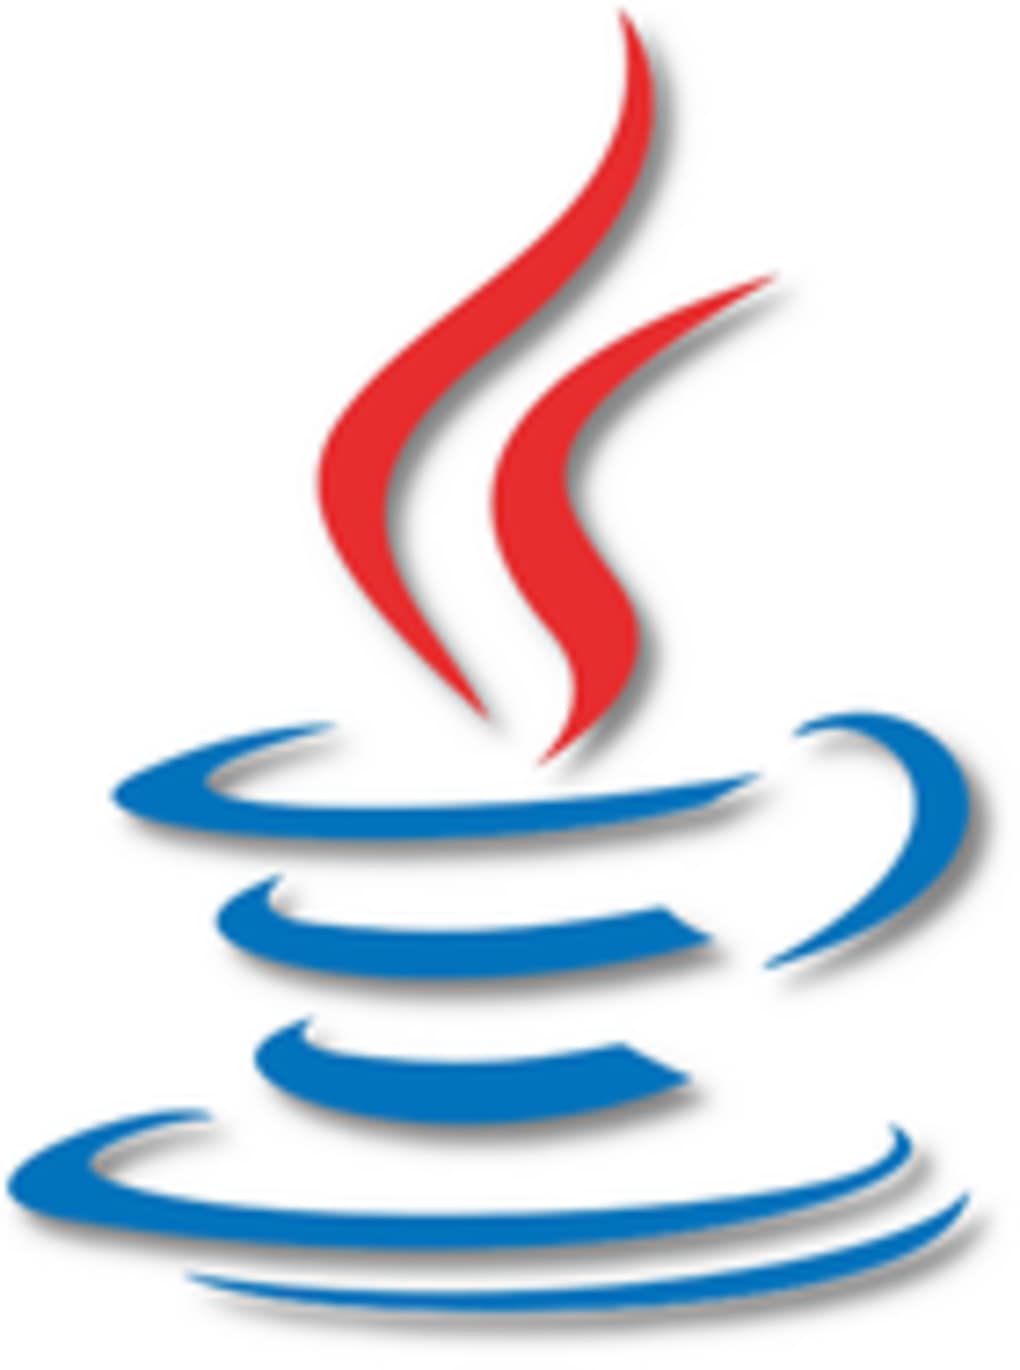 Java Jdk 10 Download Mac